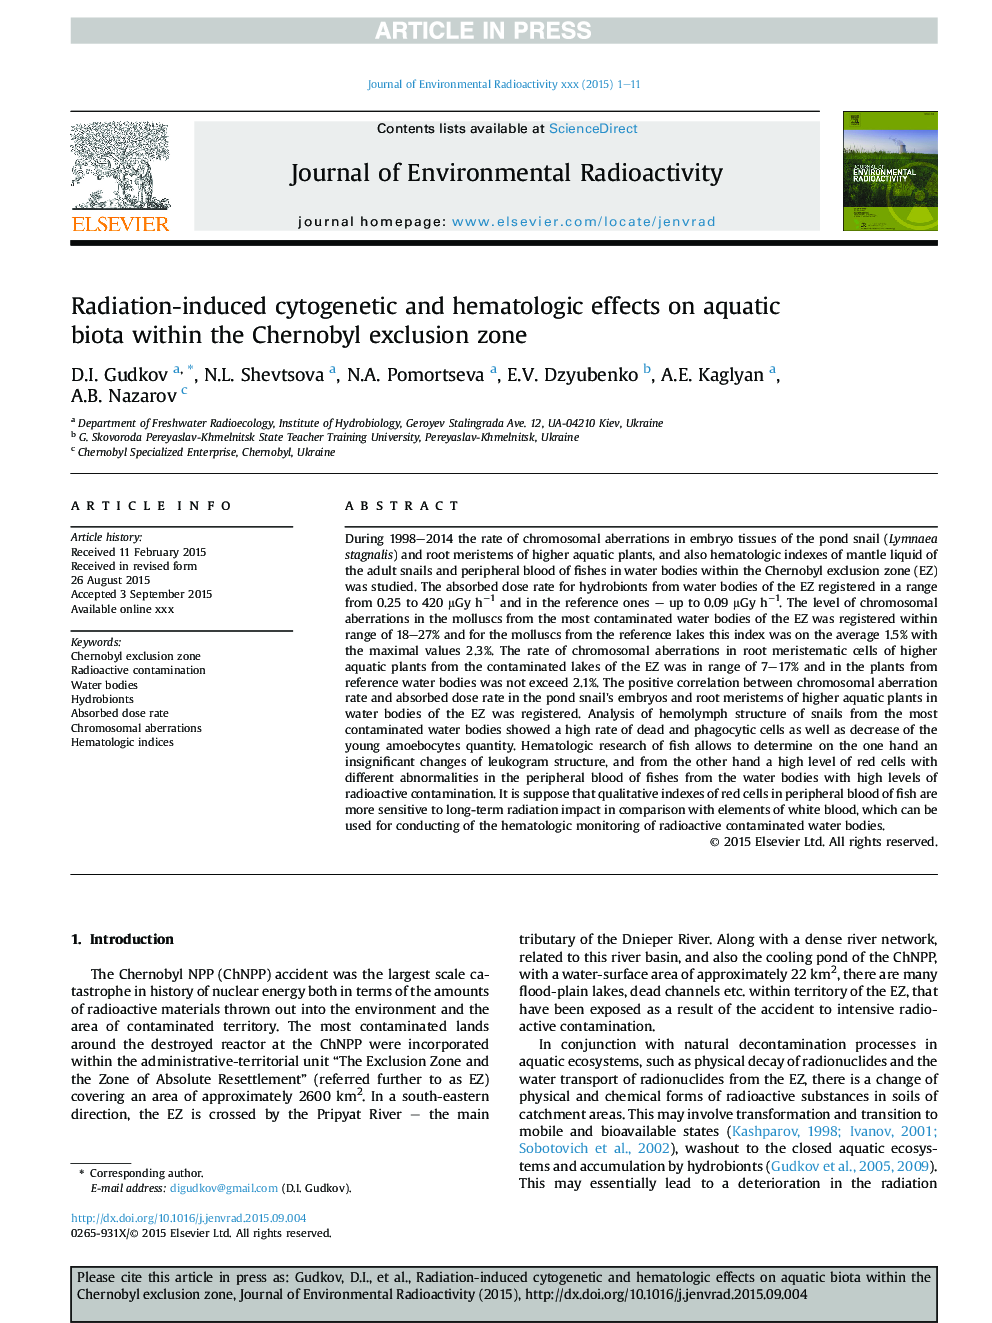 اثرات سیتوژنتیک و هماتولوژیک ناشی از تابش در زیست آبزی درون منطقه محرومیت چرنوبیل 